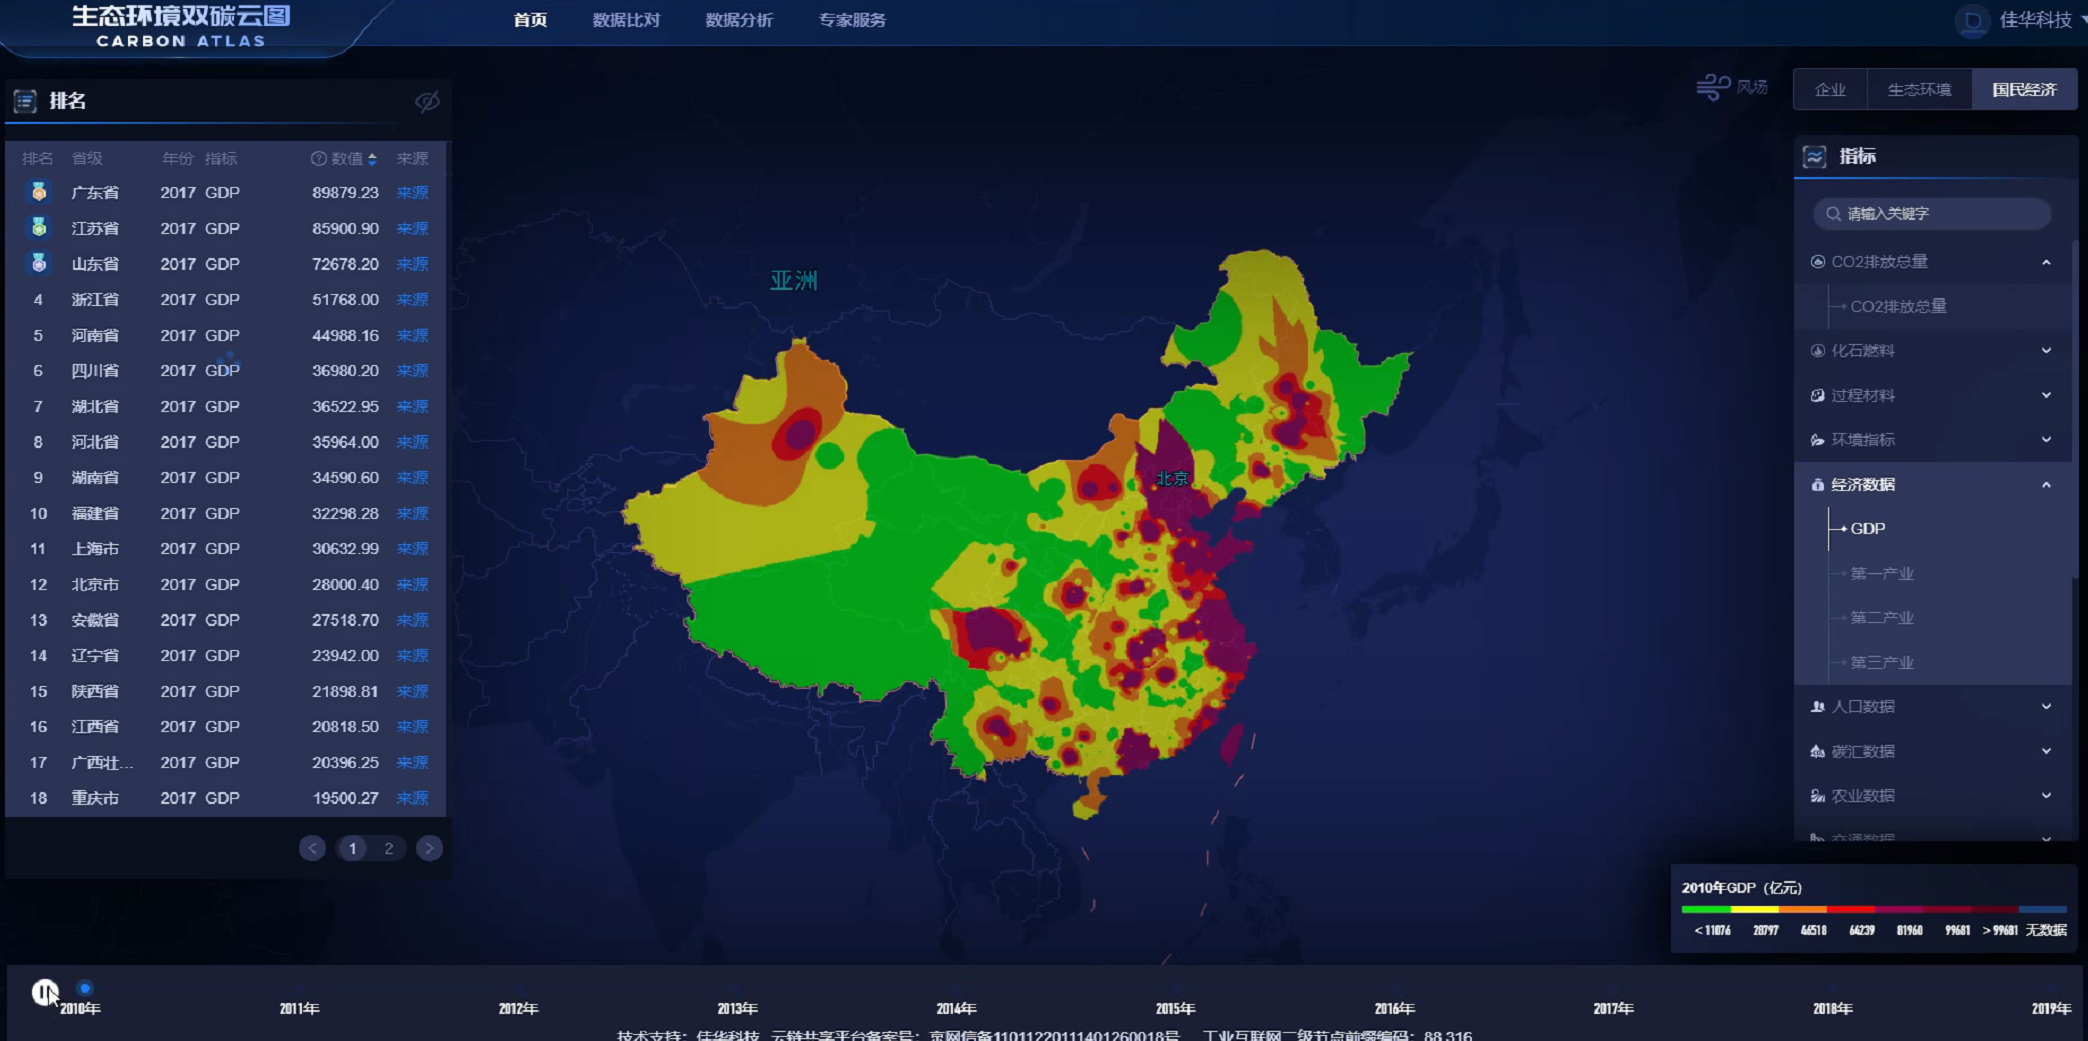 佳华科技“生态环境双碳云图”在服贸会正式发布1.png